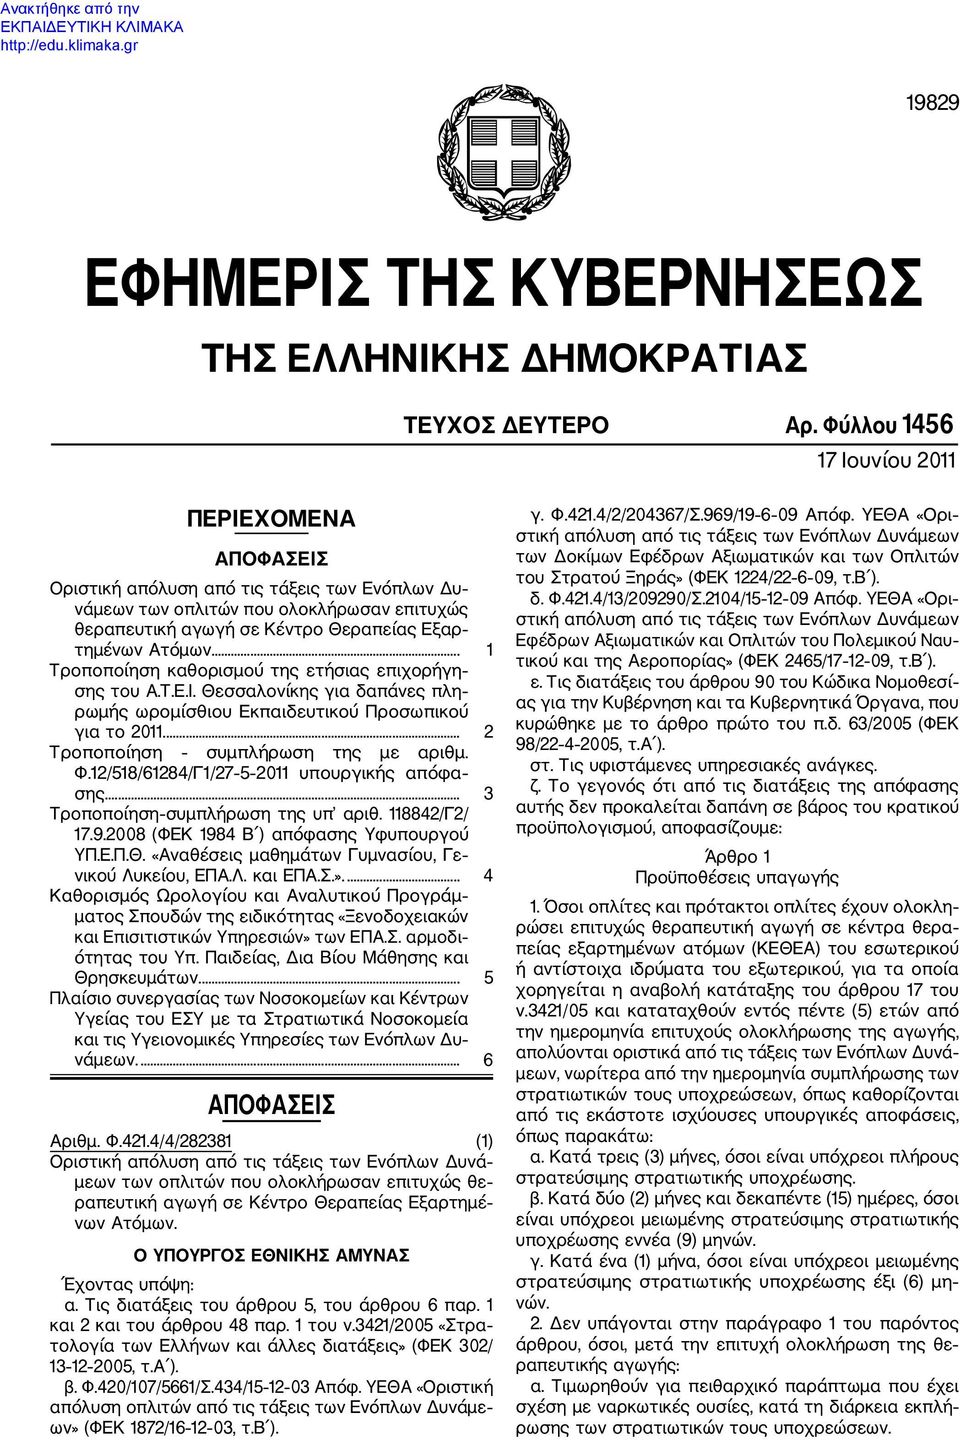 ... 1 Τροποποίηση καθορισμού της ετήσιας επιχορήγη σης του Α.Τ.Ε.Ι. Θεσσαλονίκης για δαπάνες πλη ρωμής ωρομίσθιου Εκπαιδευτικού Προσωπικού για το 2011.... 2 Τροποποίηση συμπλήρωση της με αριθμ. Φ.